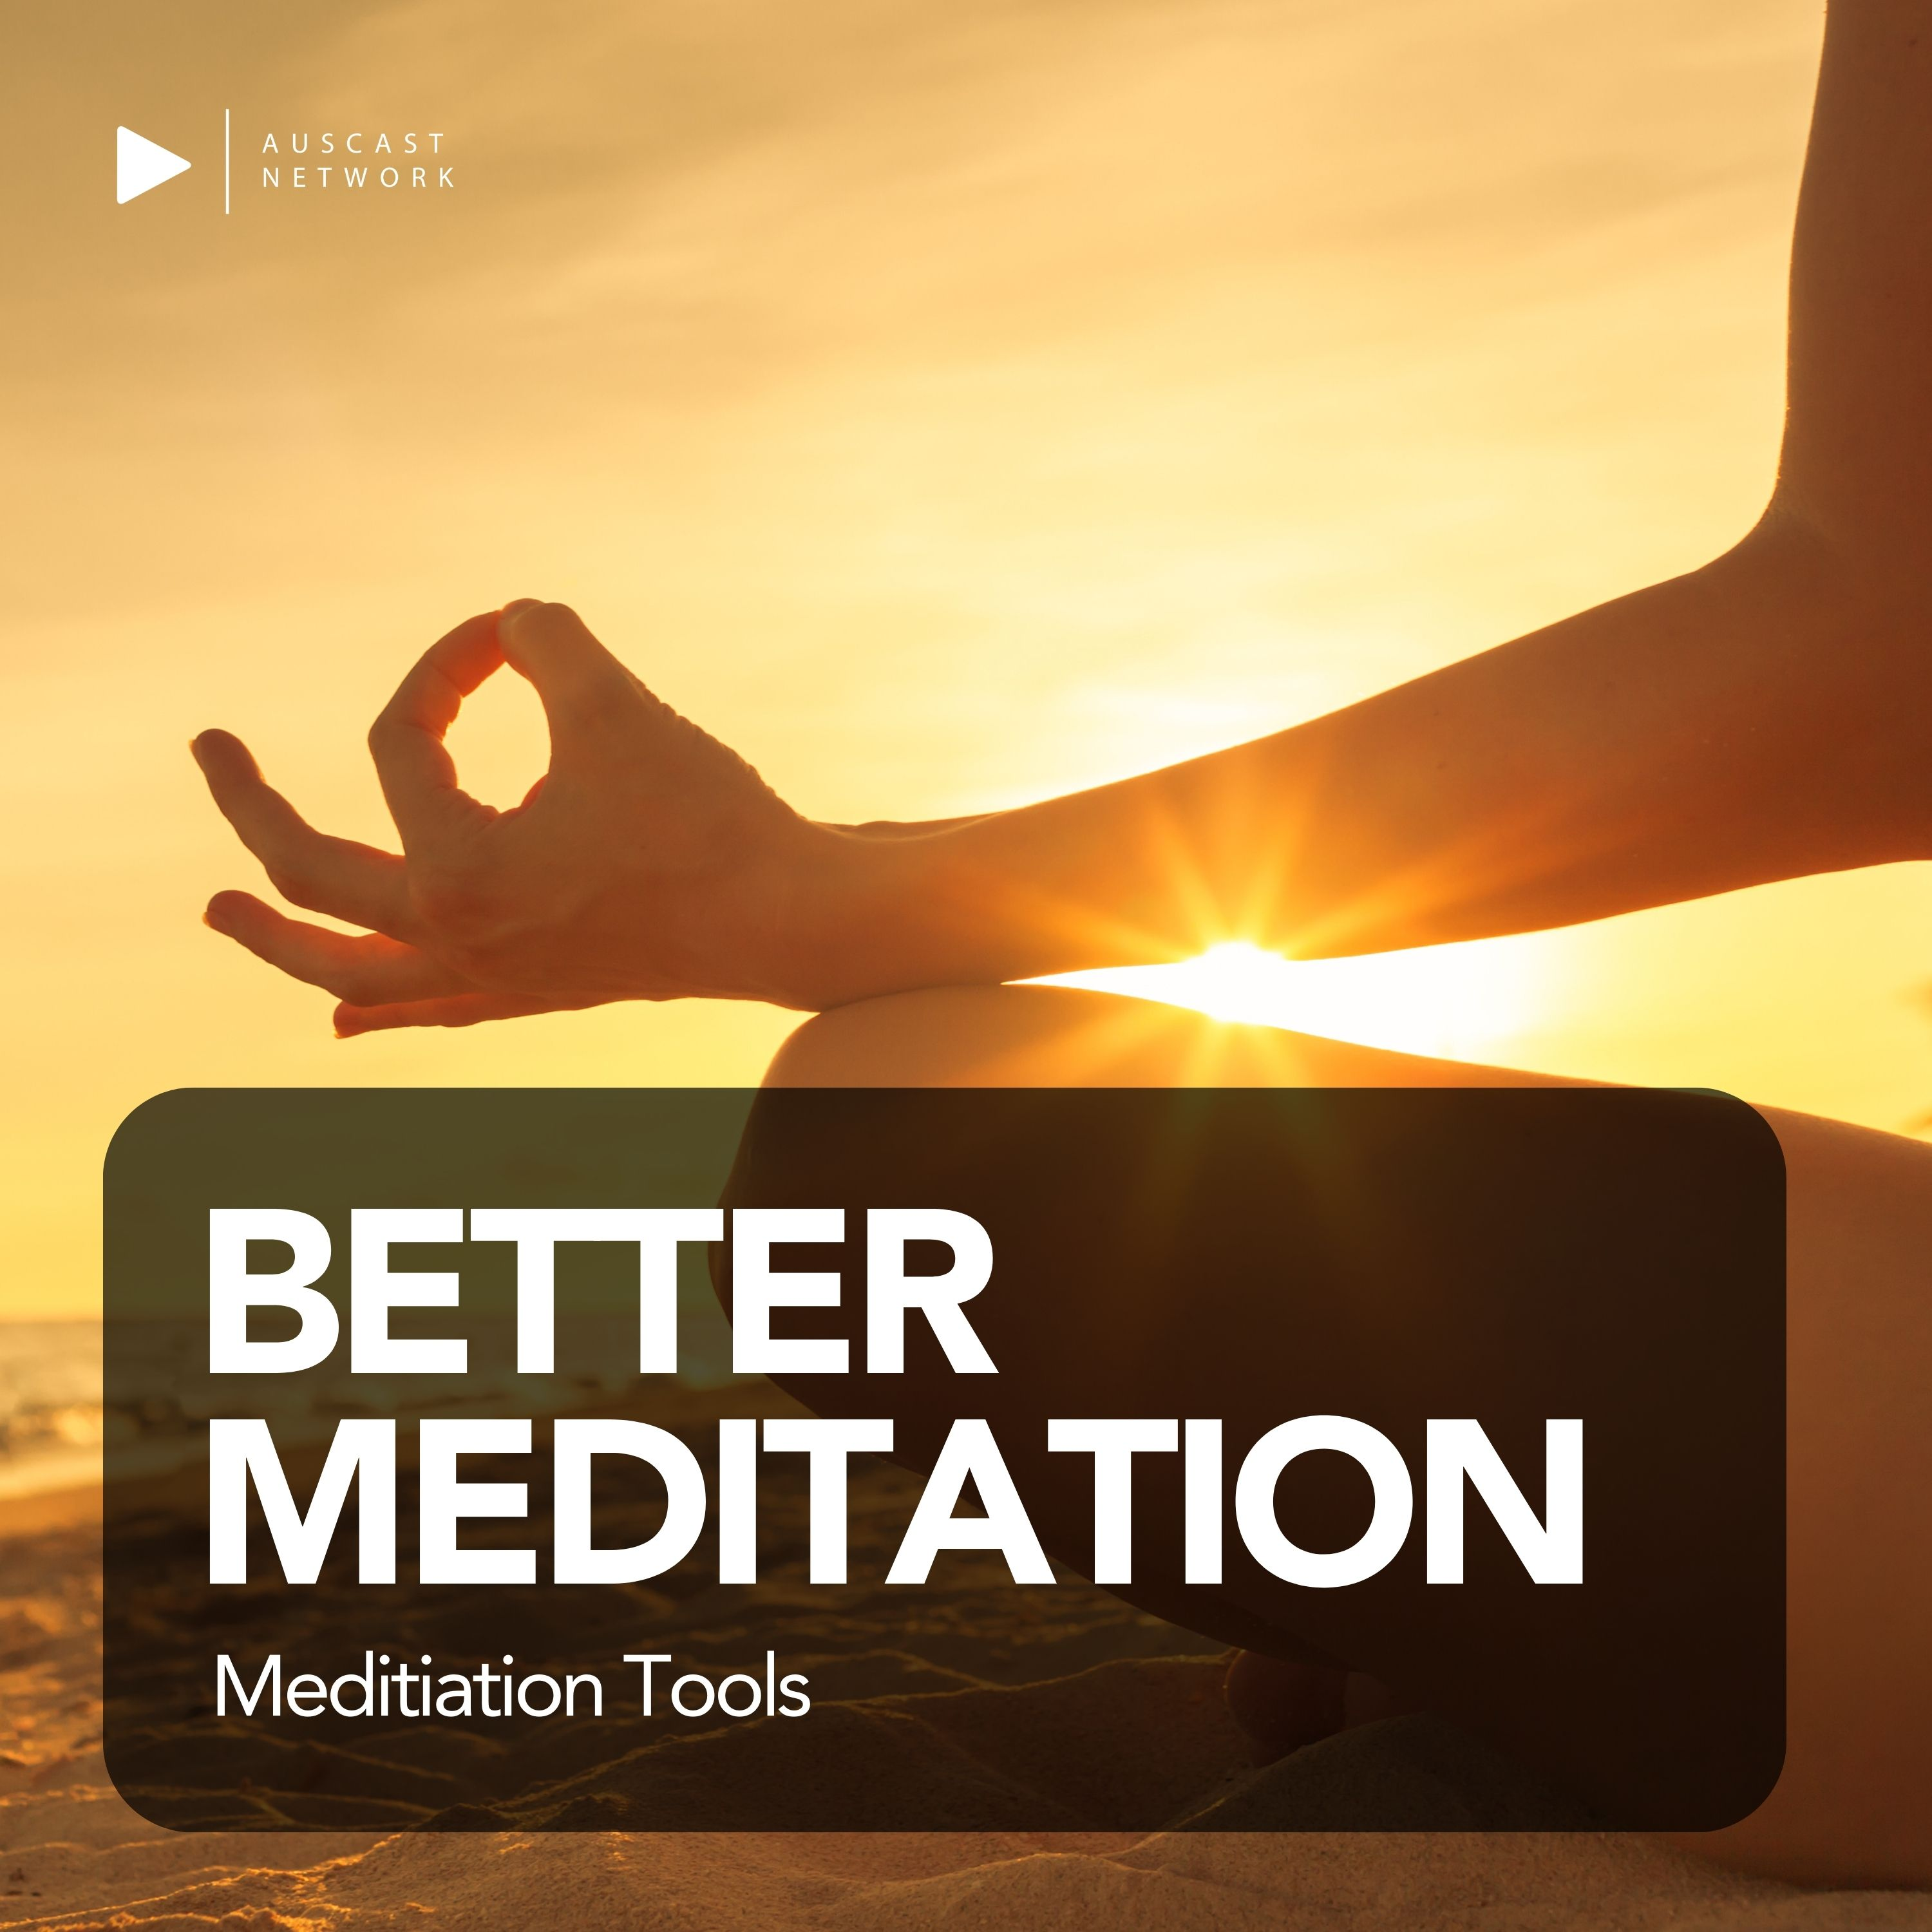 Better Meditation - Meditation Tools